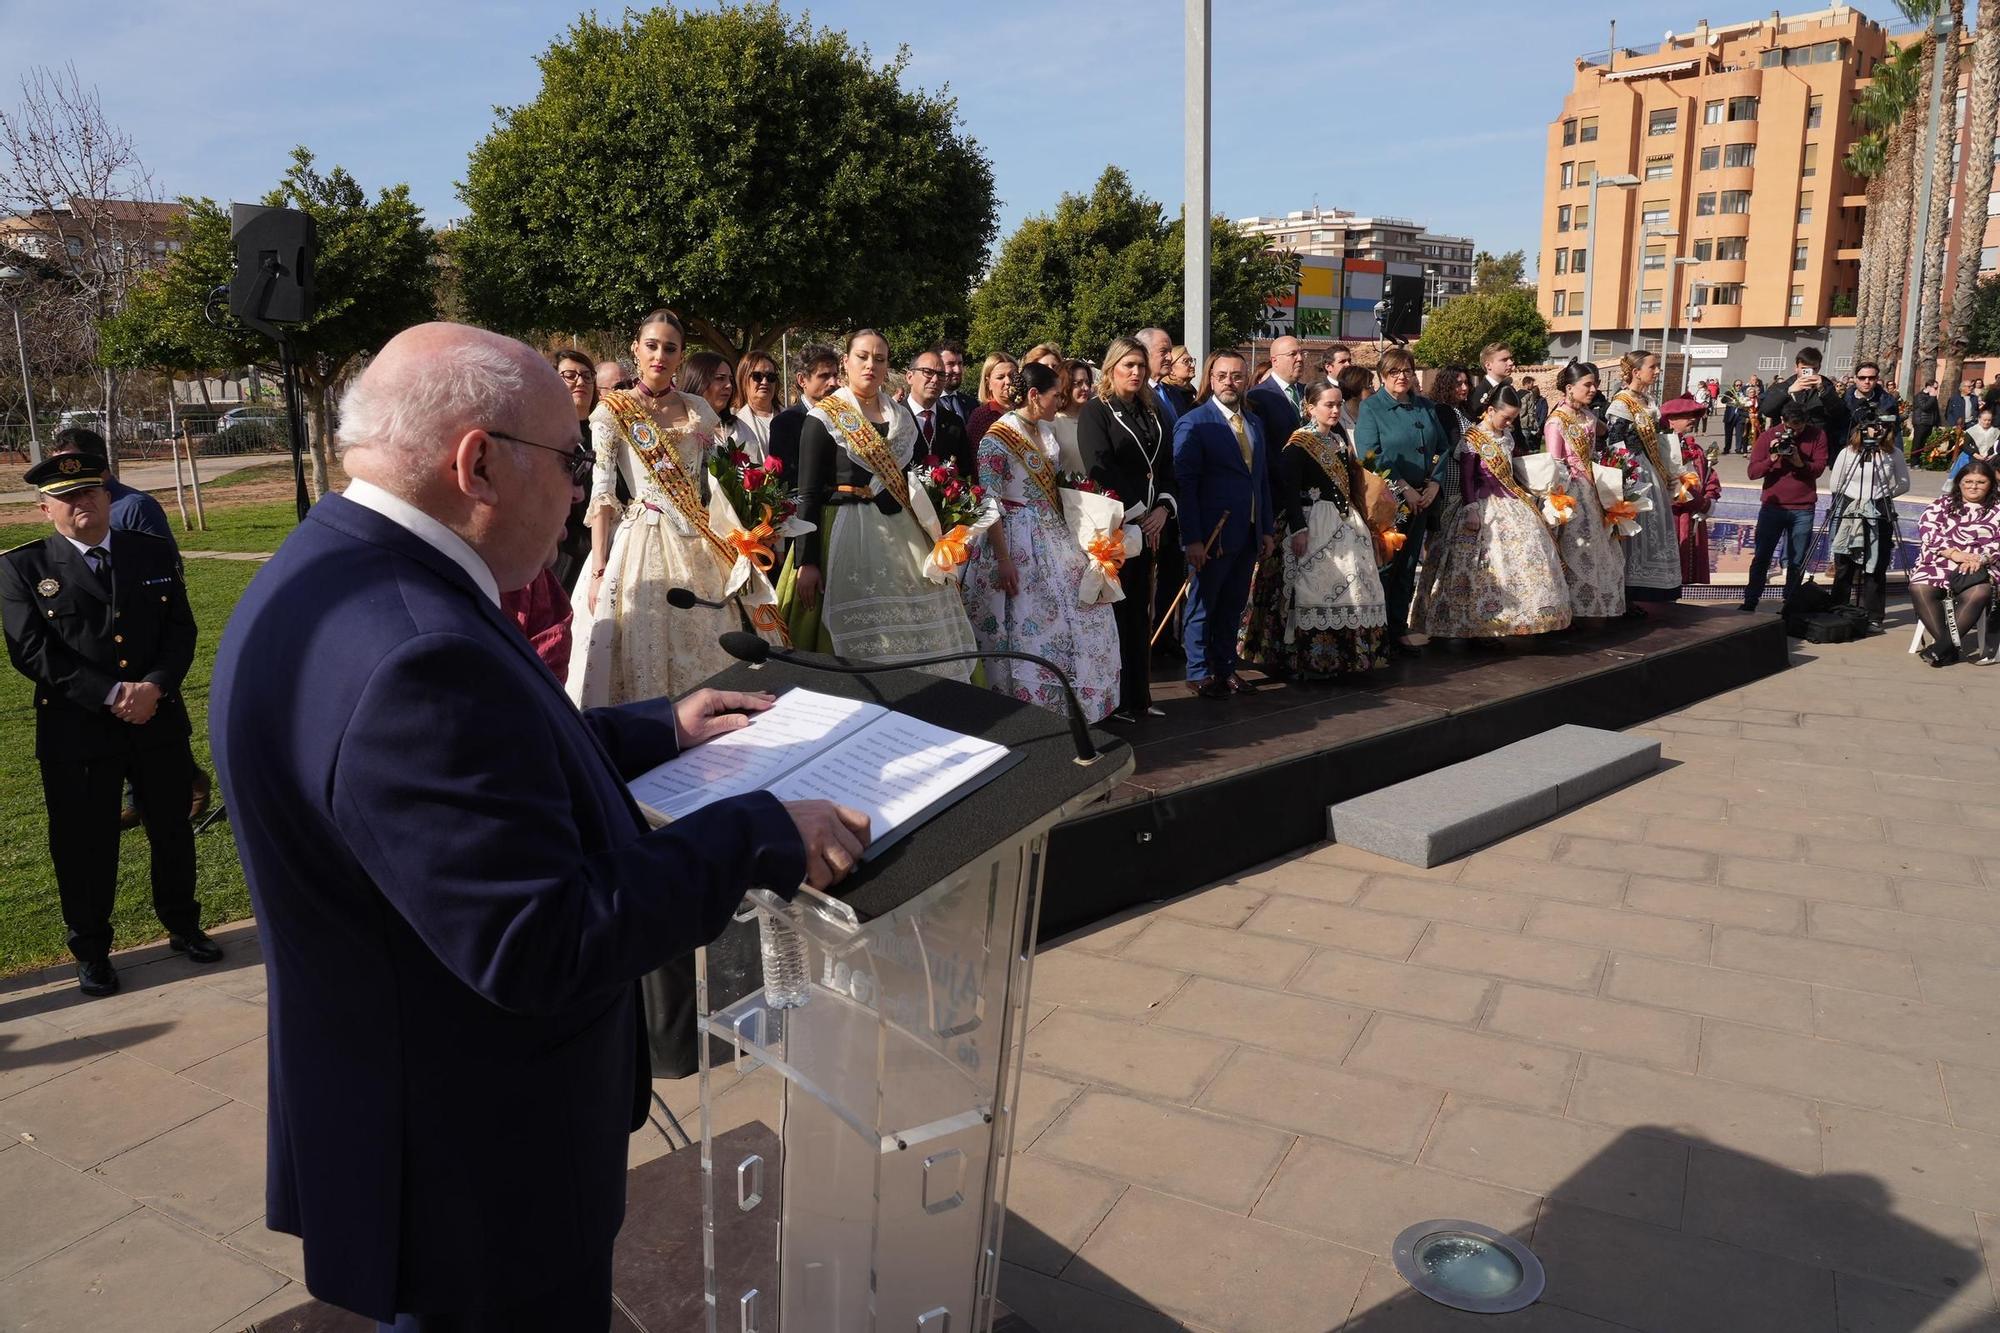 Las mejores imágenes del homenaje a Jaume I, que inicia los actos para celebrar los 750 años de Vila-real